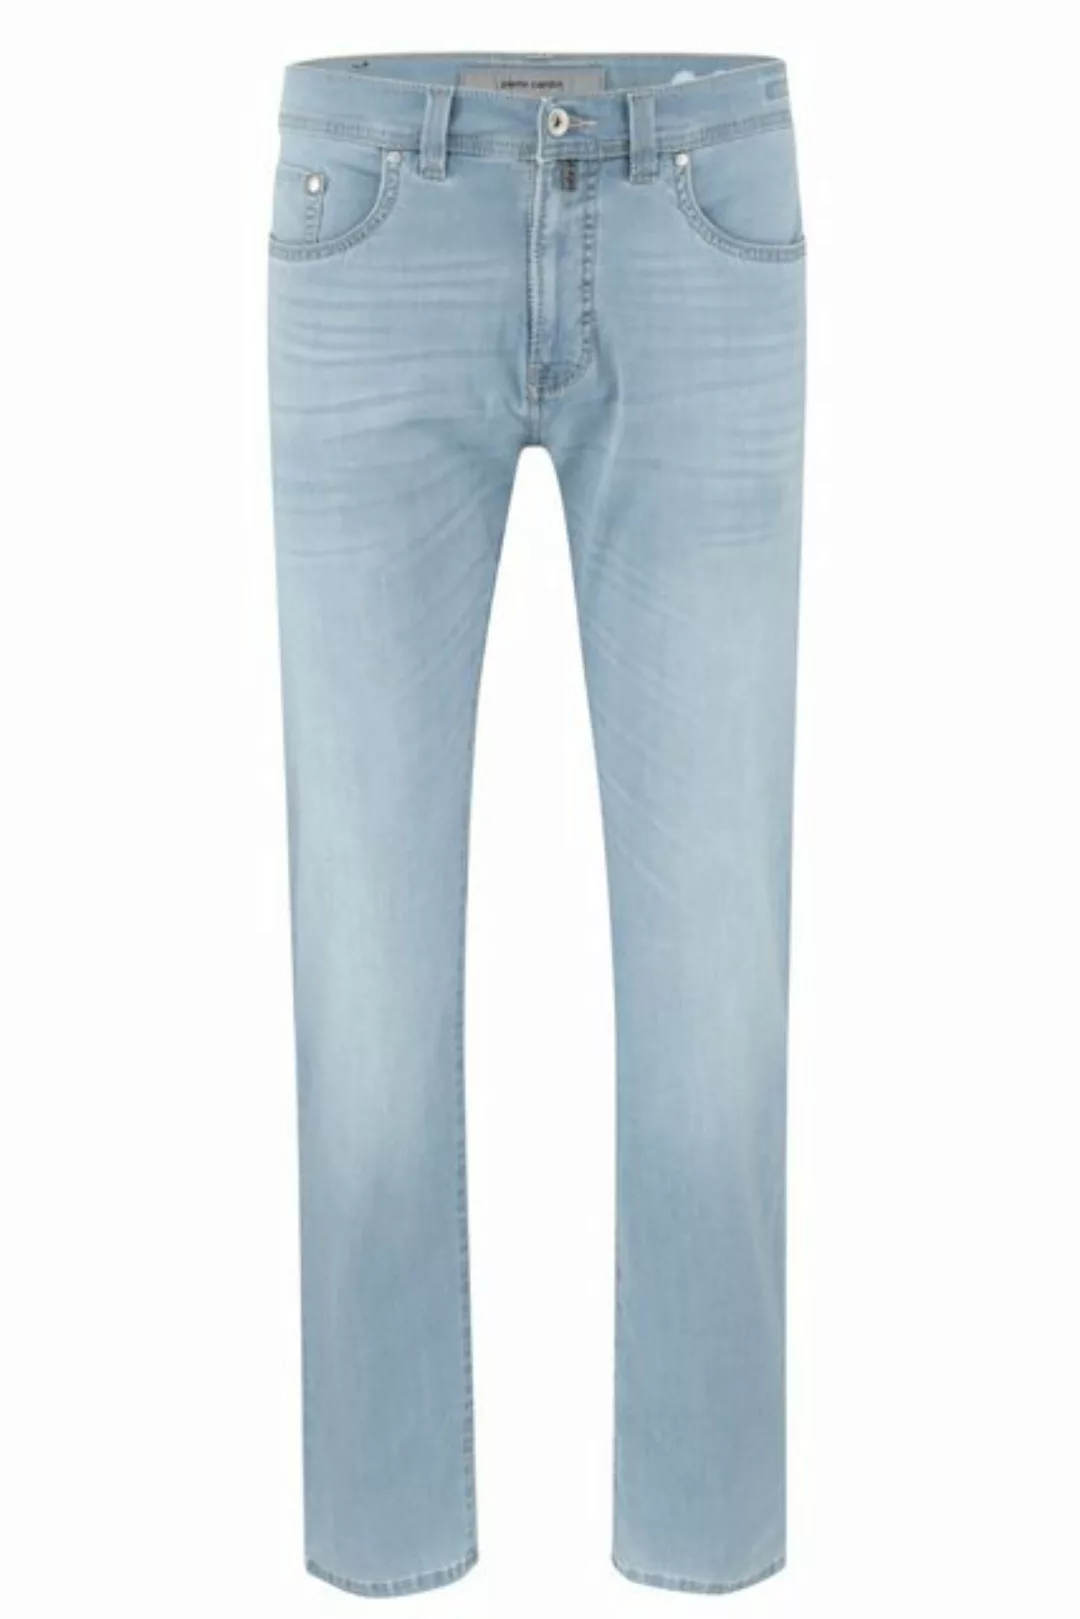 Pierre Cardin 5-Pocket-Jeans PIERRE CARDIN LYON TAPERED light blue buffies günstig online kaufen